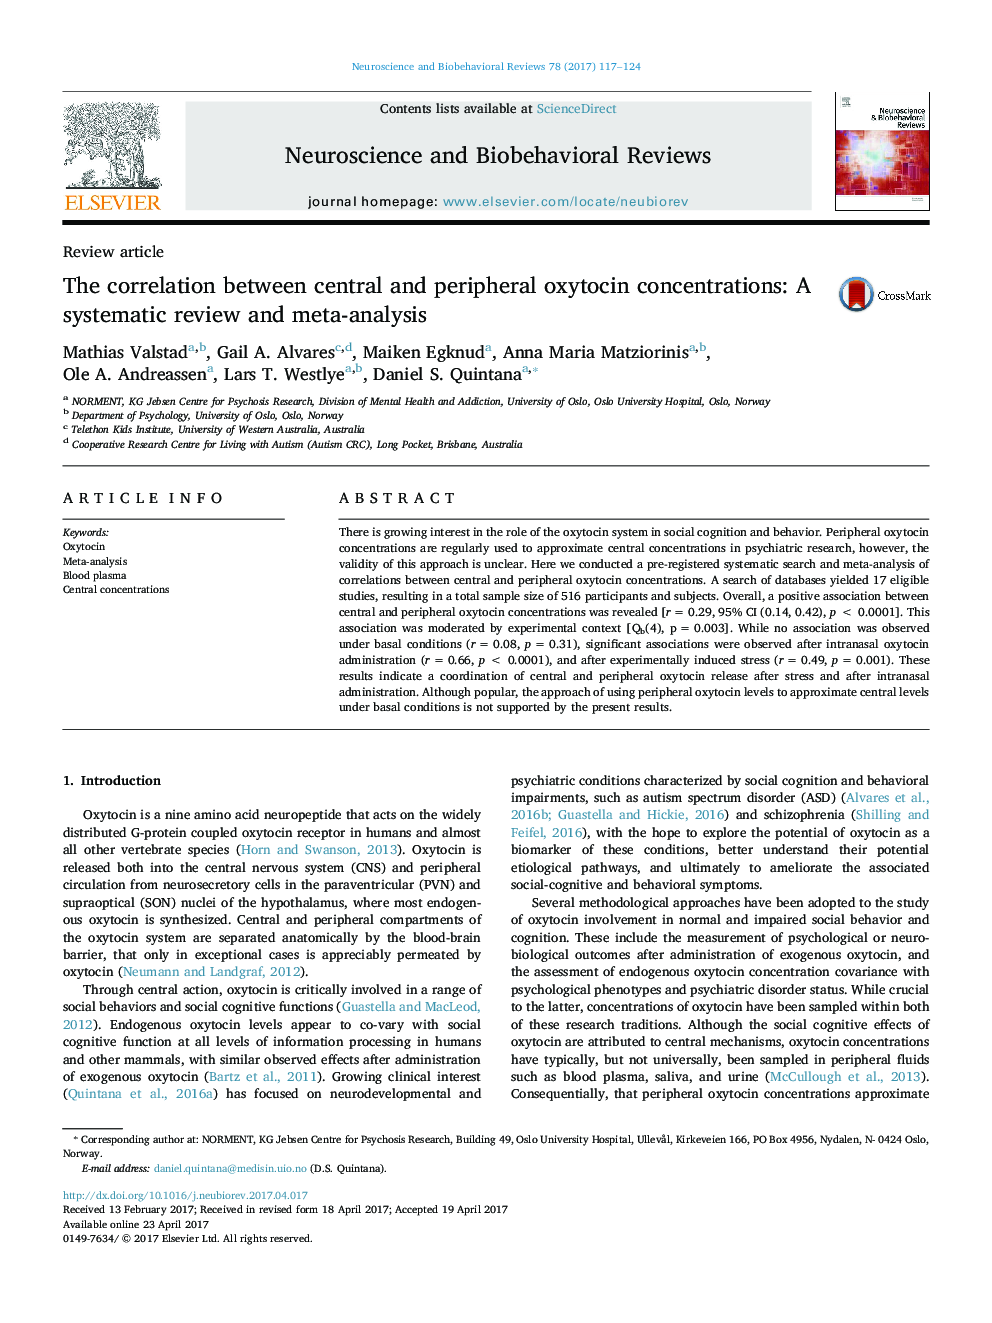 همبستگی بین غلظت اکسیتوسین مرکزی و محیطی: یک بررسی سیستماتیک و متاآنالیز 